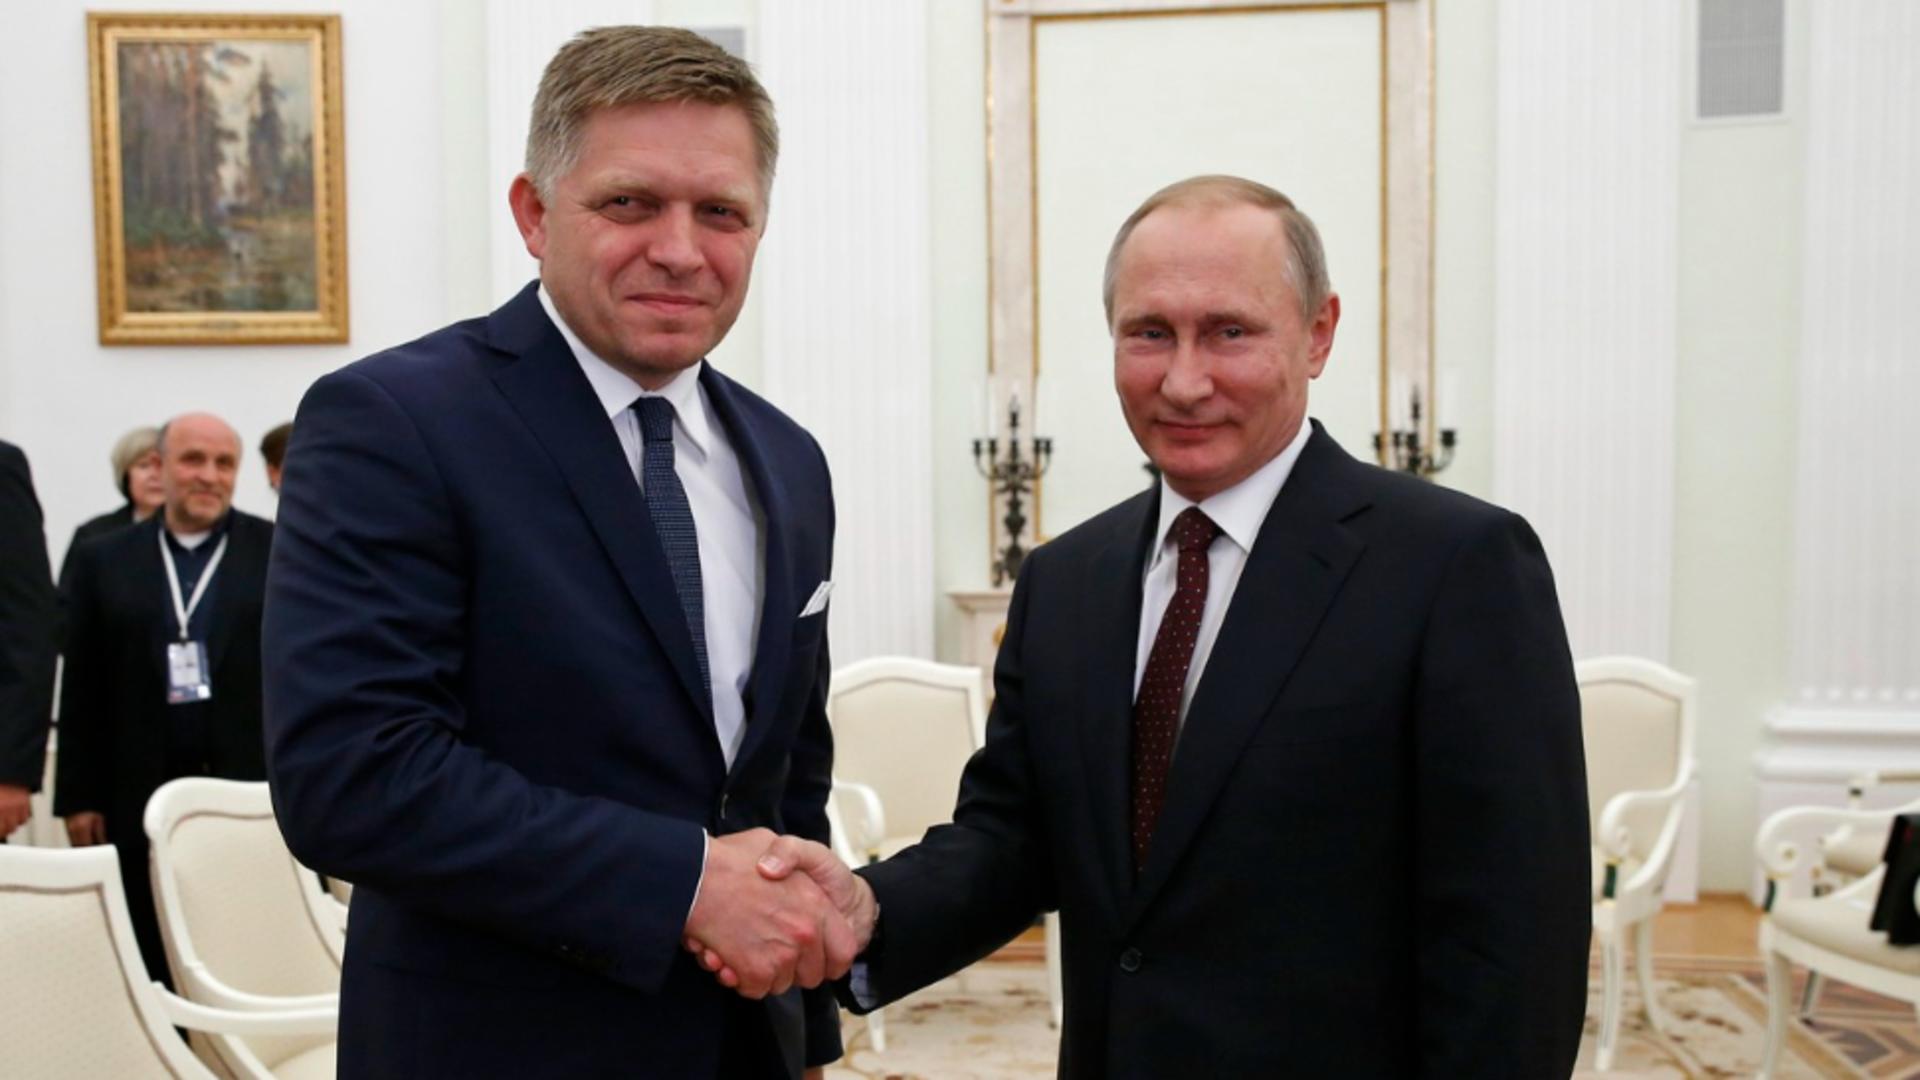 Slovacia sfidează UE și încetează ajutorul militar pentru Ucraina - Premierul Robert Fico, pro-rus și aliat al lui Viktor Orban, a făcut anunțul